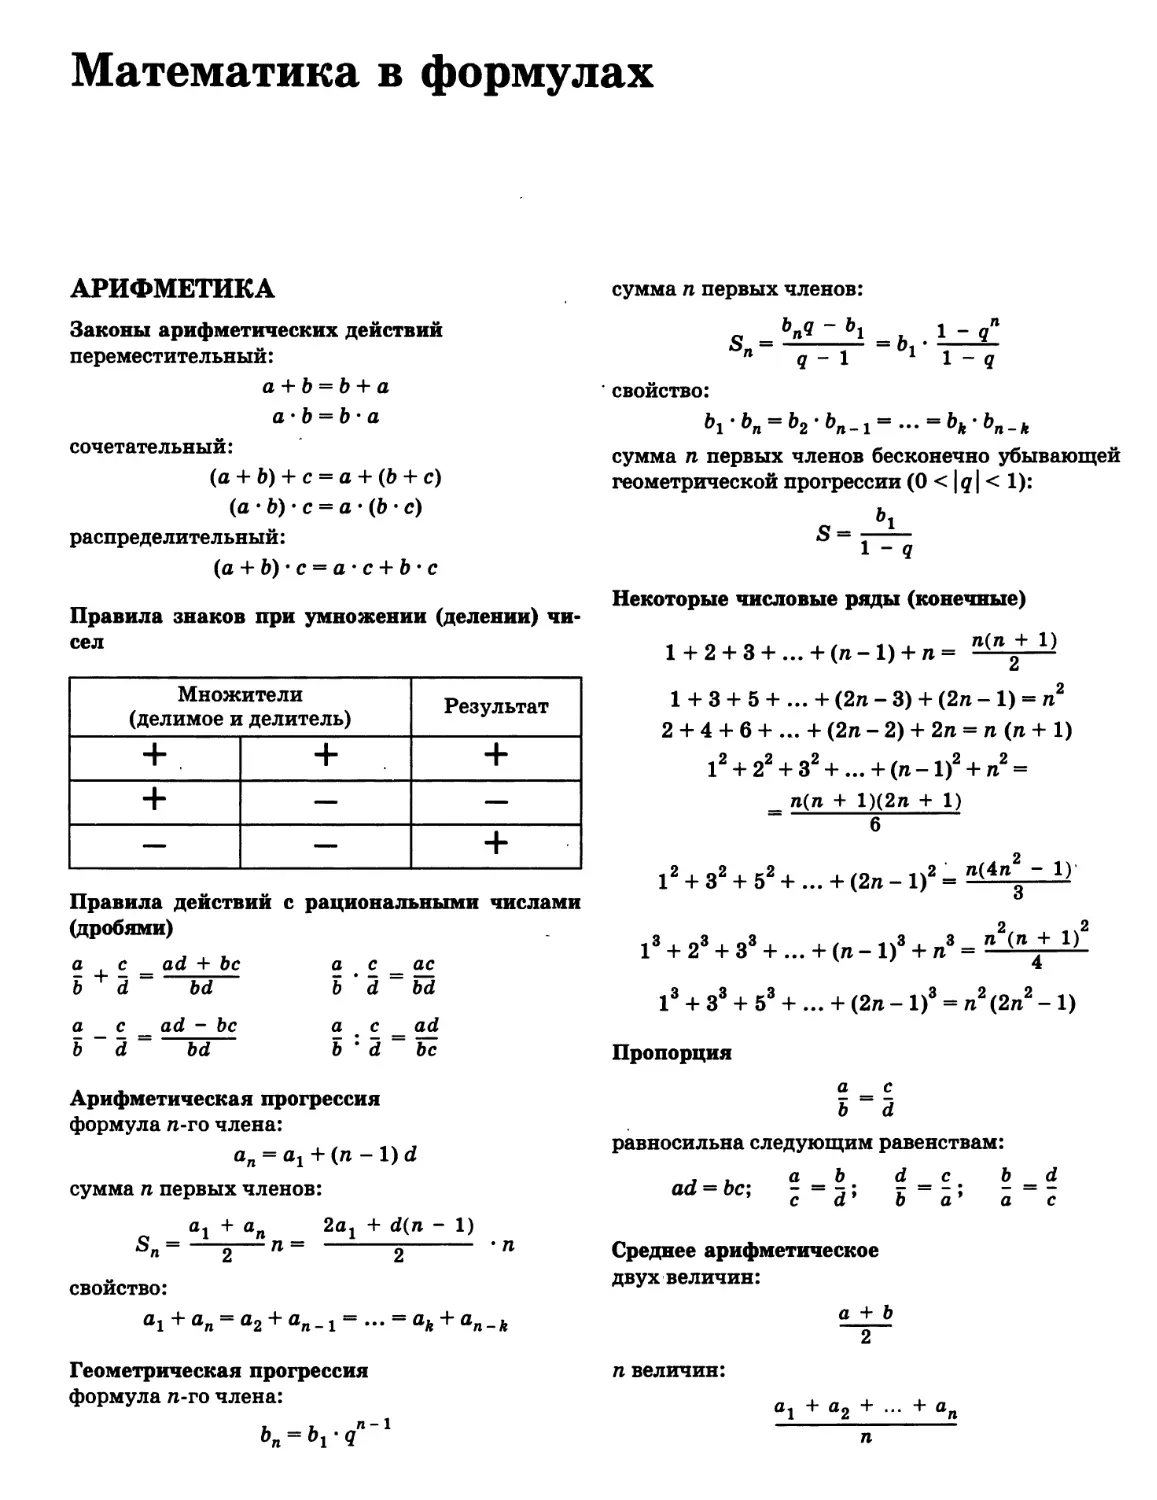 Математика в формулах
Законы арифметических действий
>>>
>>>
>>>
>>>